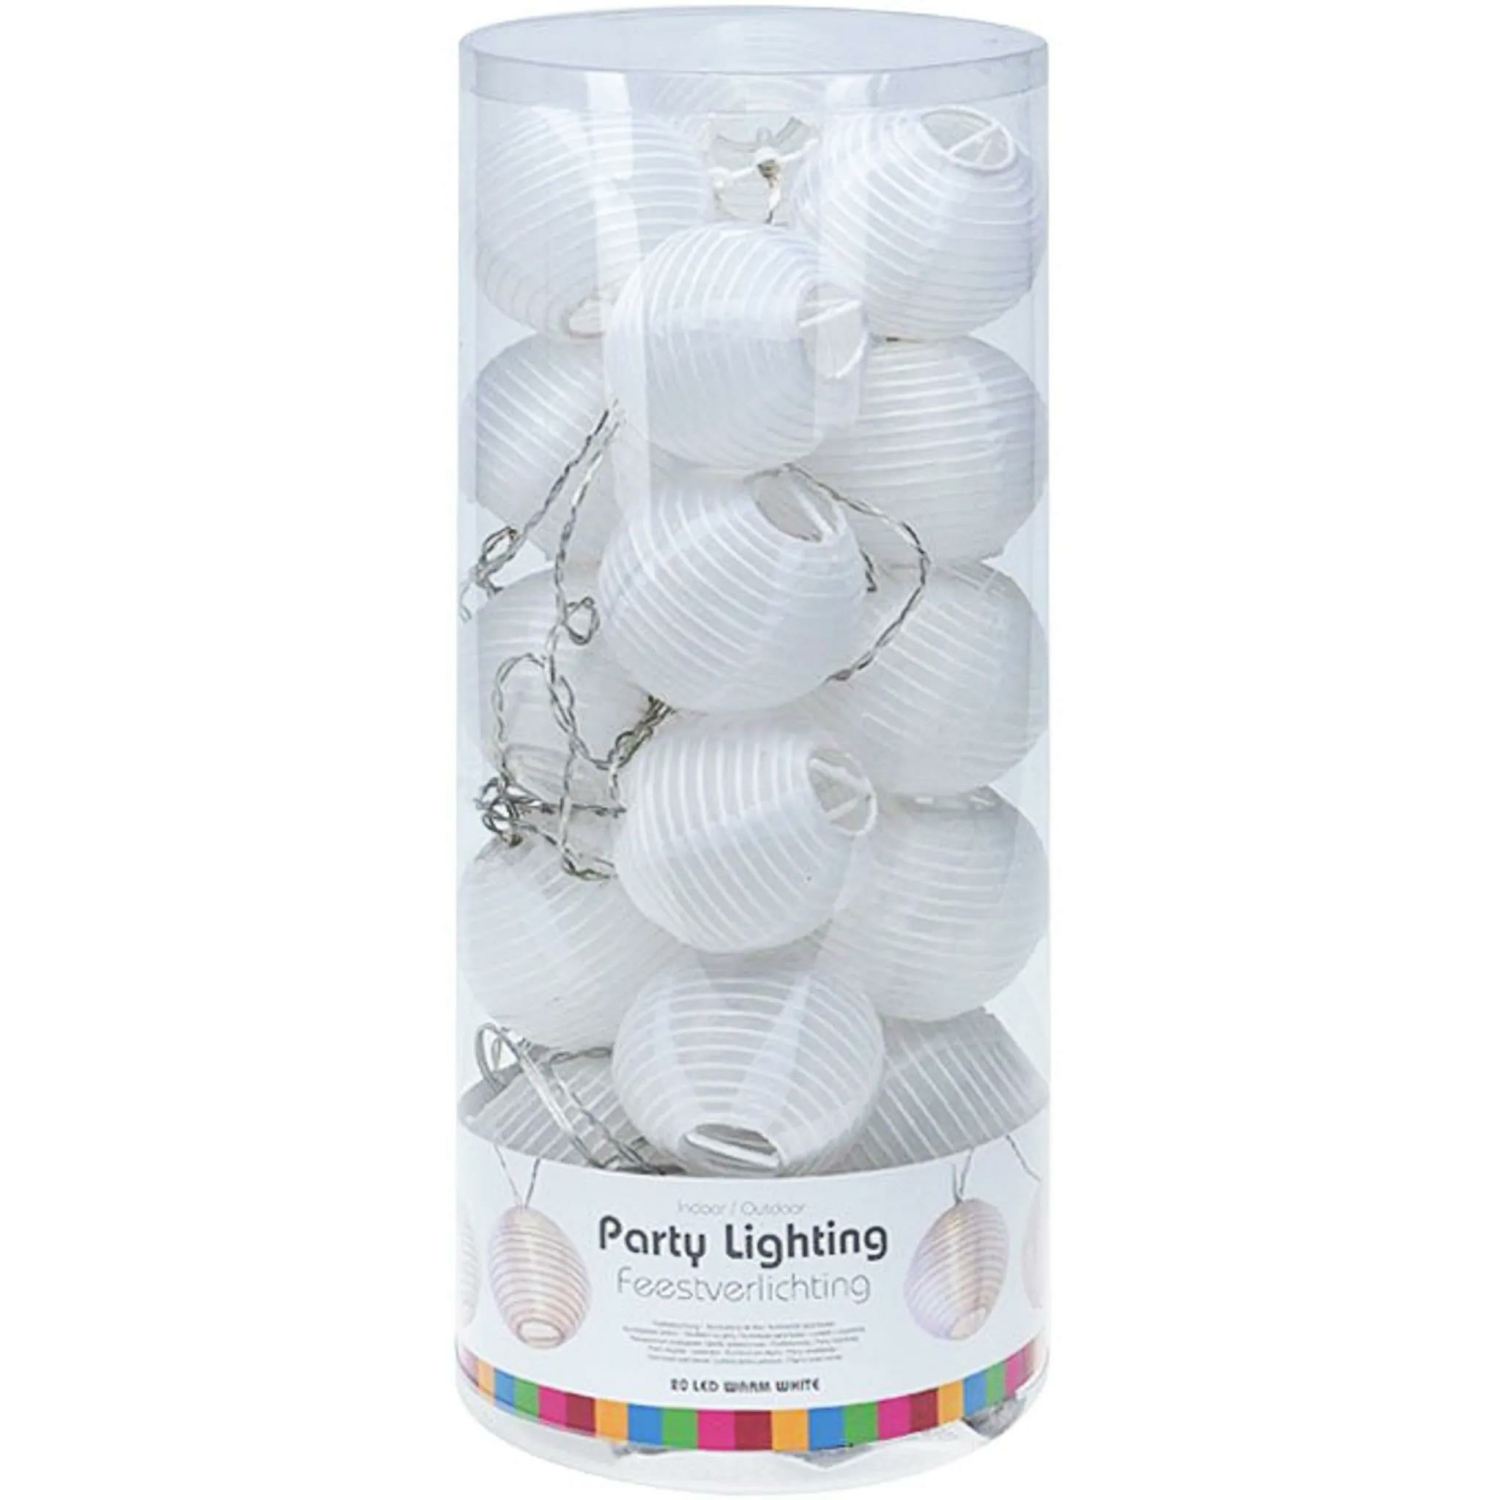 Lampion-Lichterkette mit 25 großen LED-Lampions Ø 15 cm weiß für